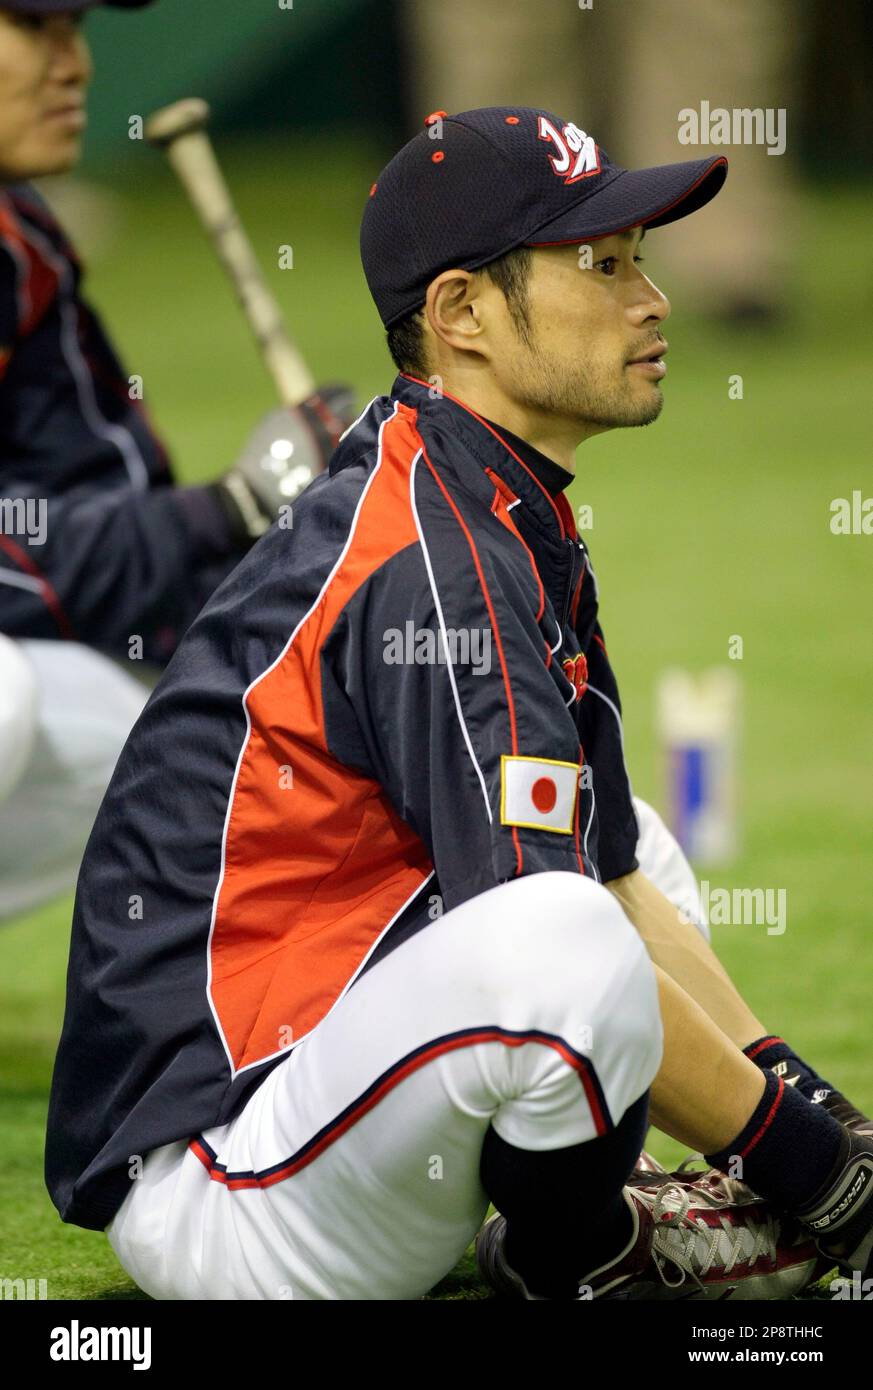 Ichiro Suzuki playing for the Seattle Mariners Stock Photo - Alamy